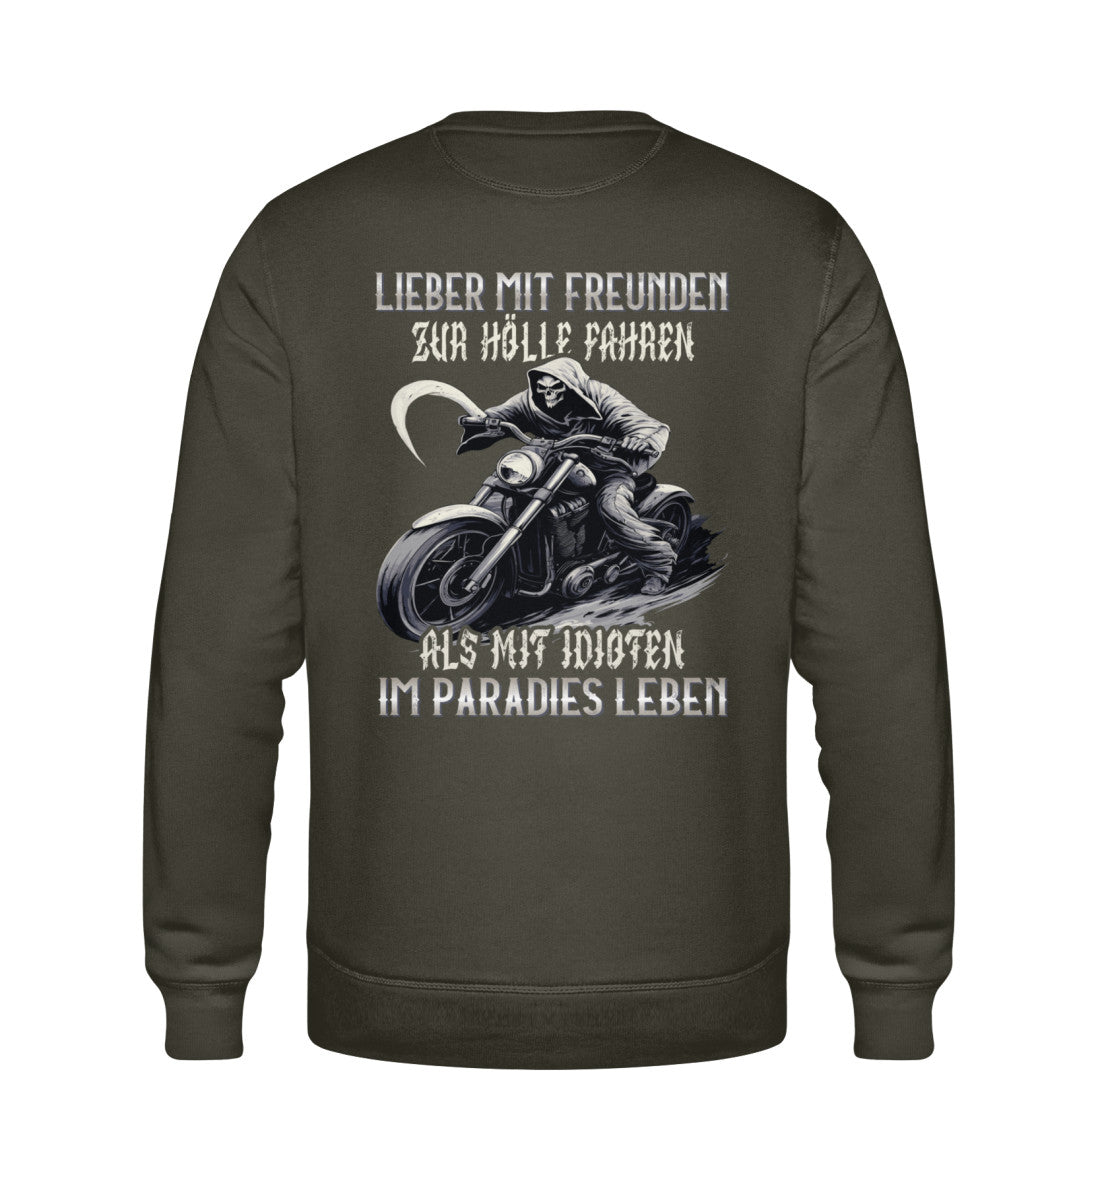 Ein Biker Sweatshirt für Motorradfahrer von Wingbikers mit dem Aufdruck, Lieber mit Freunden zur Hölle fahren, als mit Idioten im Paradies Leben, als Back Print - in khaki grün.